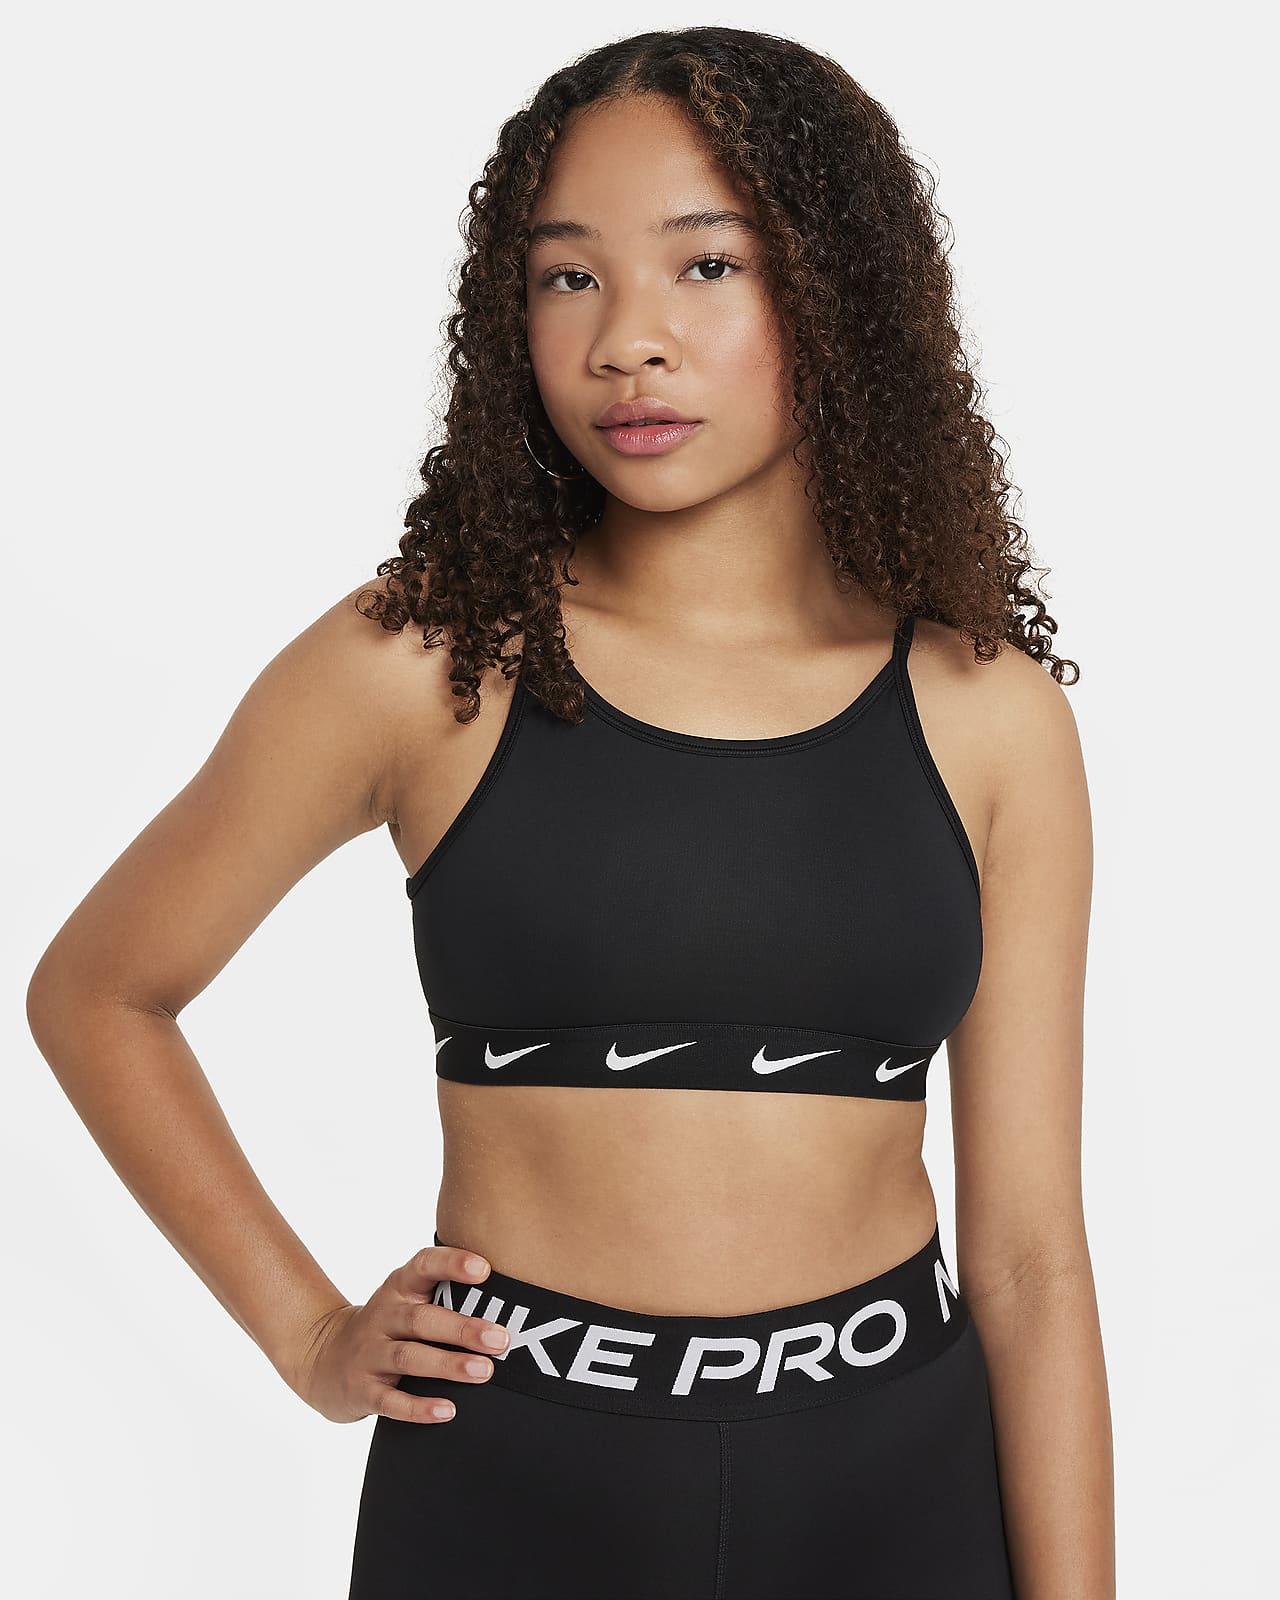 Girls' Sports Bras. Nike AU